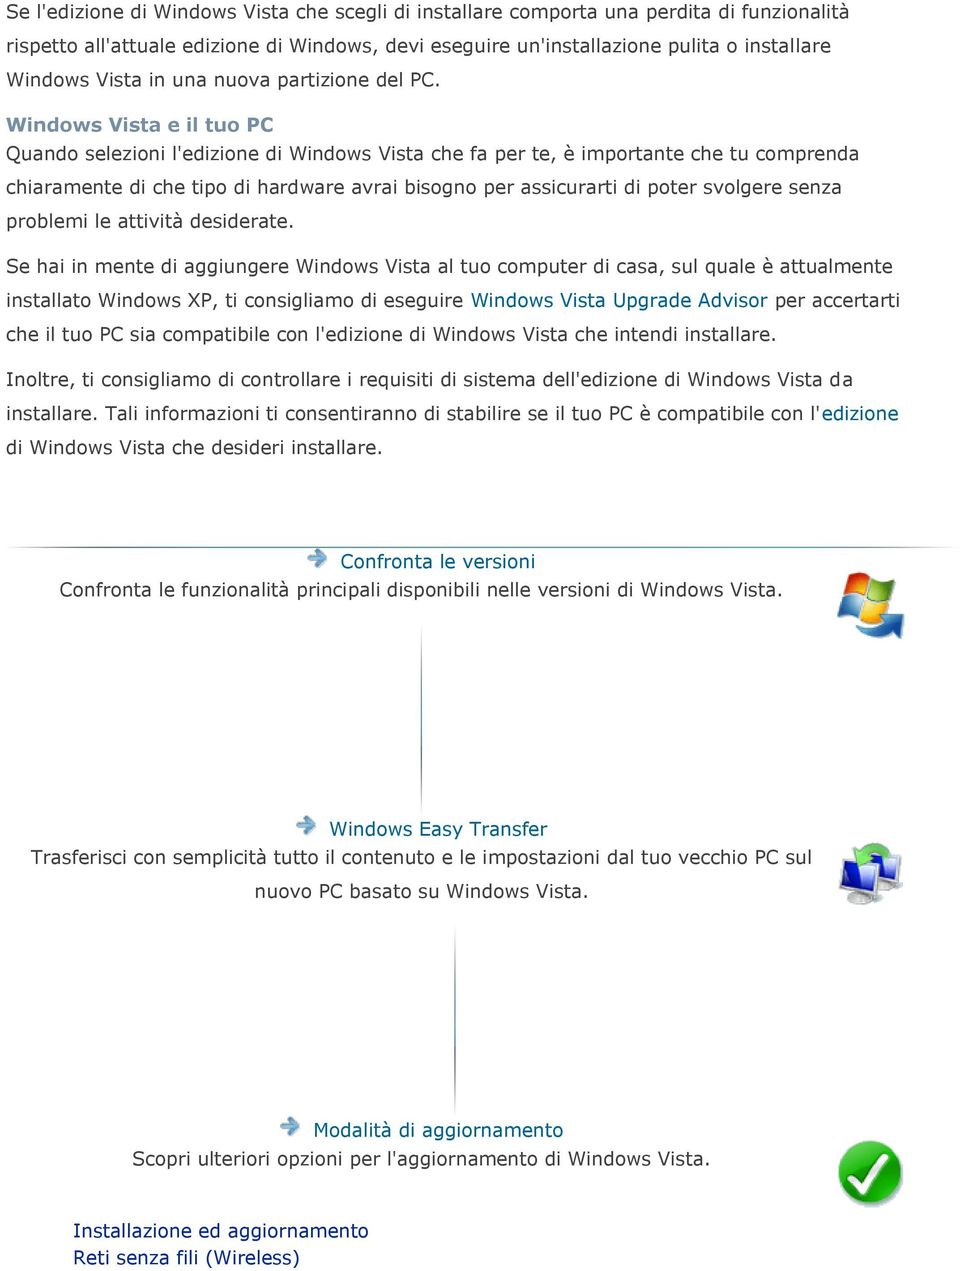 Windows Vista e il tuo PC Quando selezioni l'edizione di Windows Vista che fa per te, è importante che tu comprenda chiaramente di che tipo di hardware avrai bisogno per assicurarti di poter svolgere